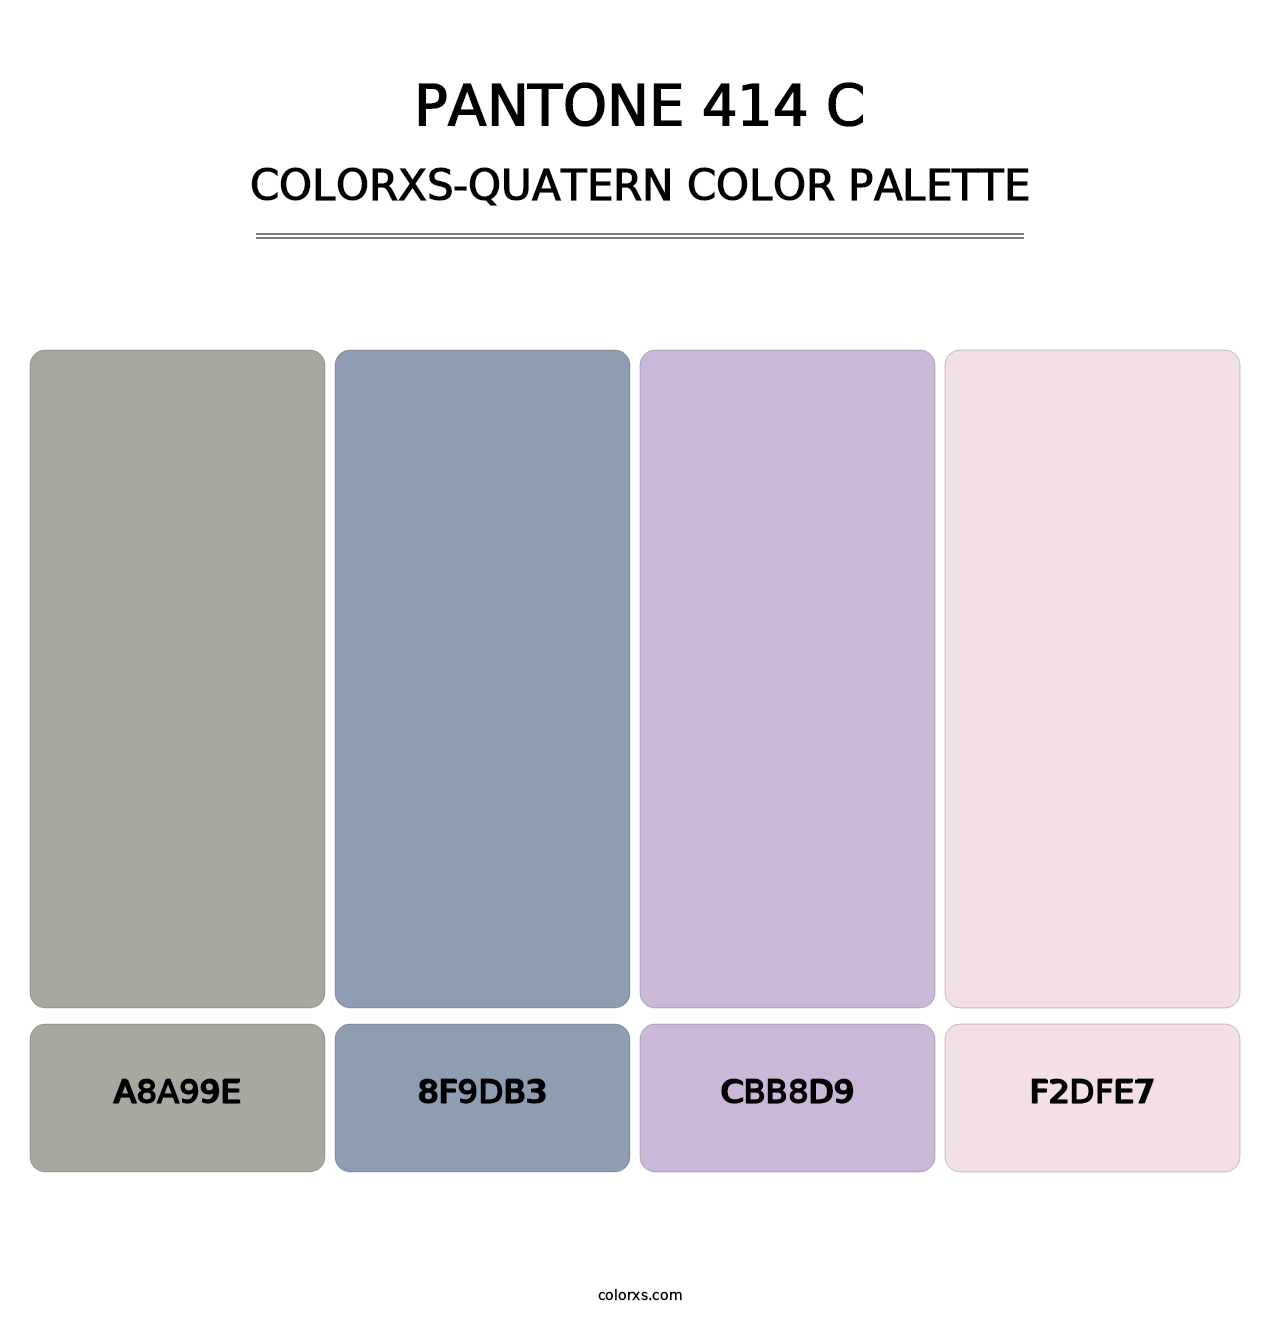 PANTONE 414 C - Colorxs Quatern Palette